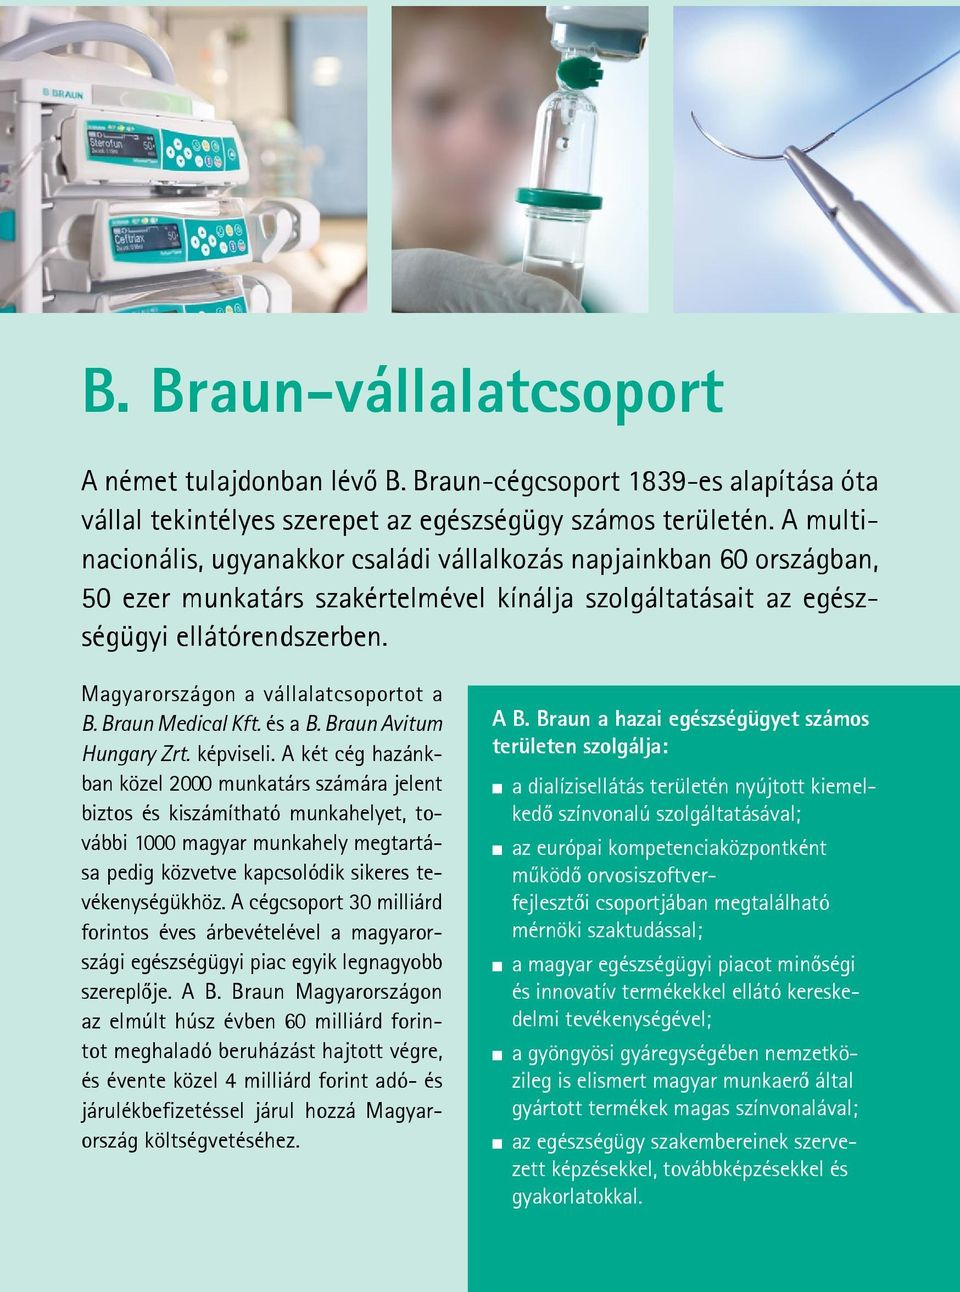 Magyarországon a vállalatcsoportot a B. Braun Medical Kft. és a B. Braun Avitum Hungary Zrt. képviseli.